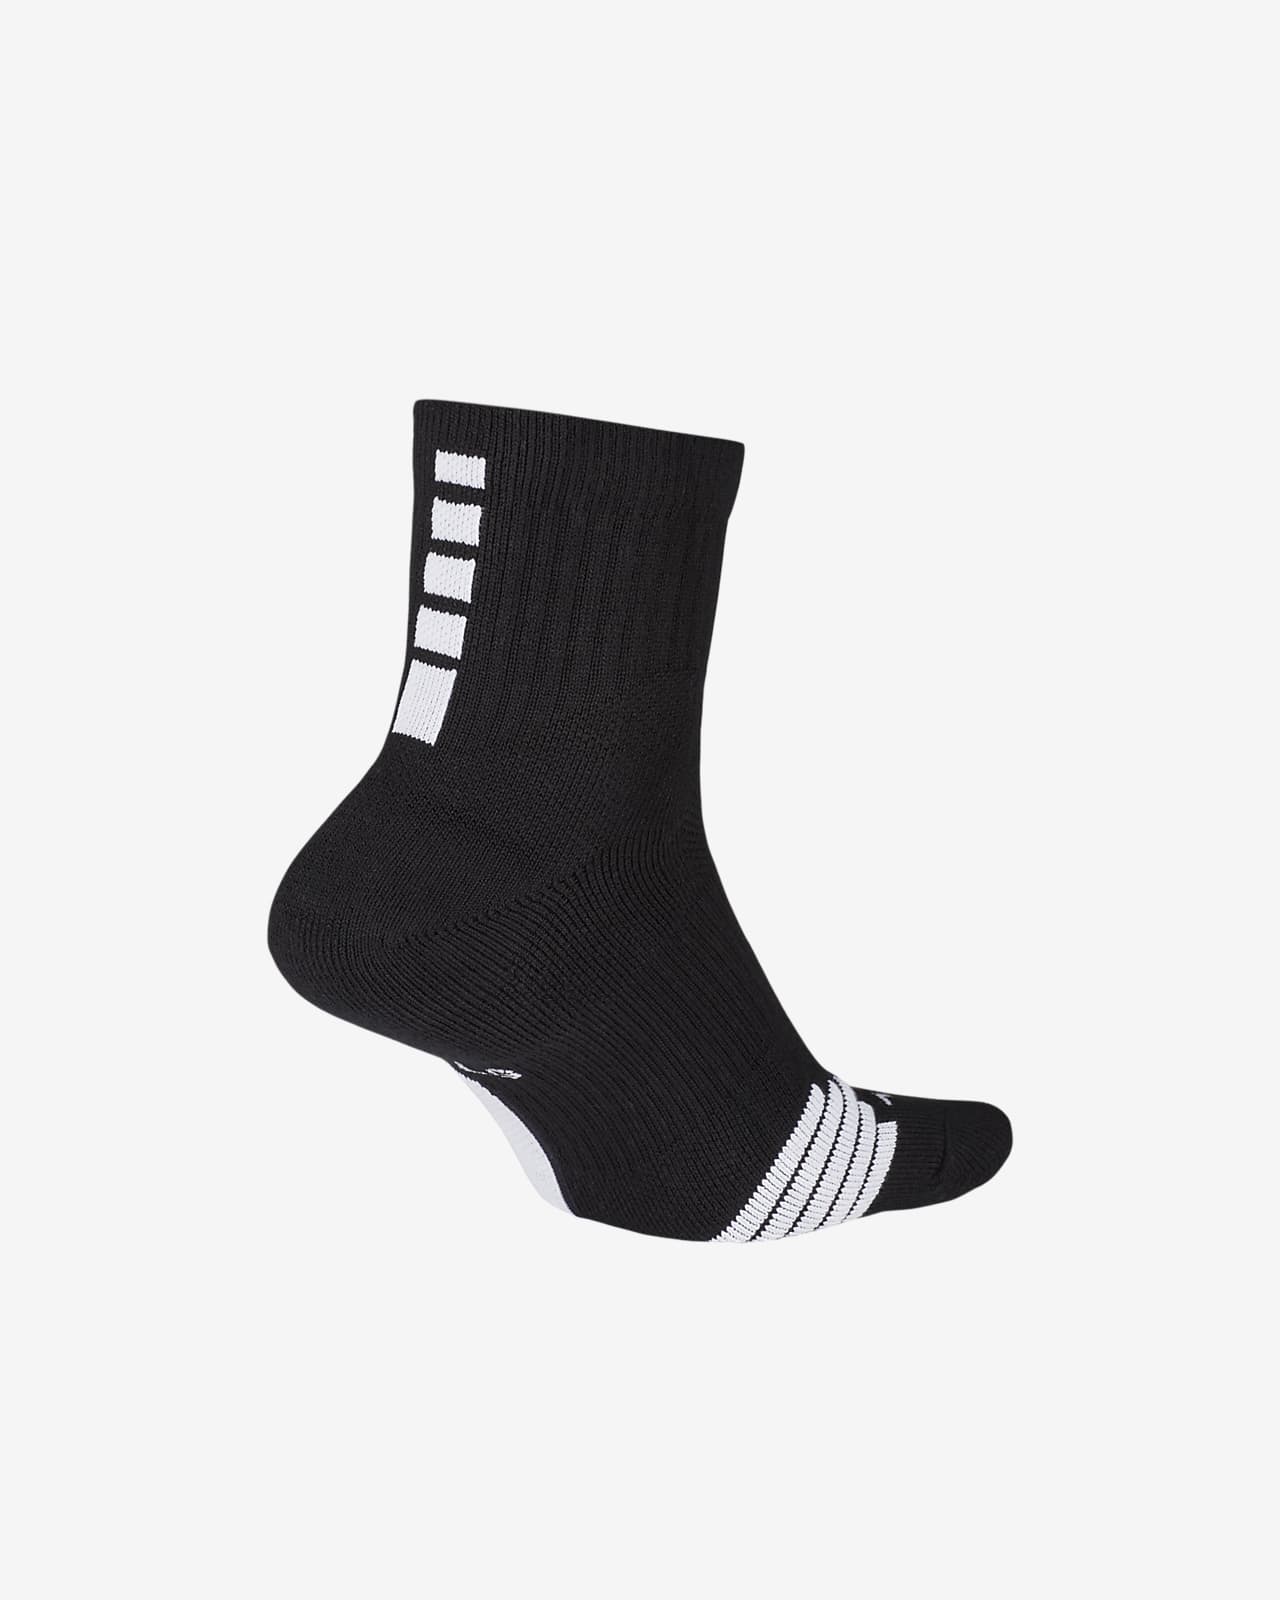 Nike Elite Basketball Socks Available on NikeiD - WearTesters